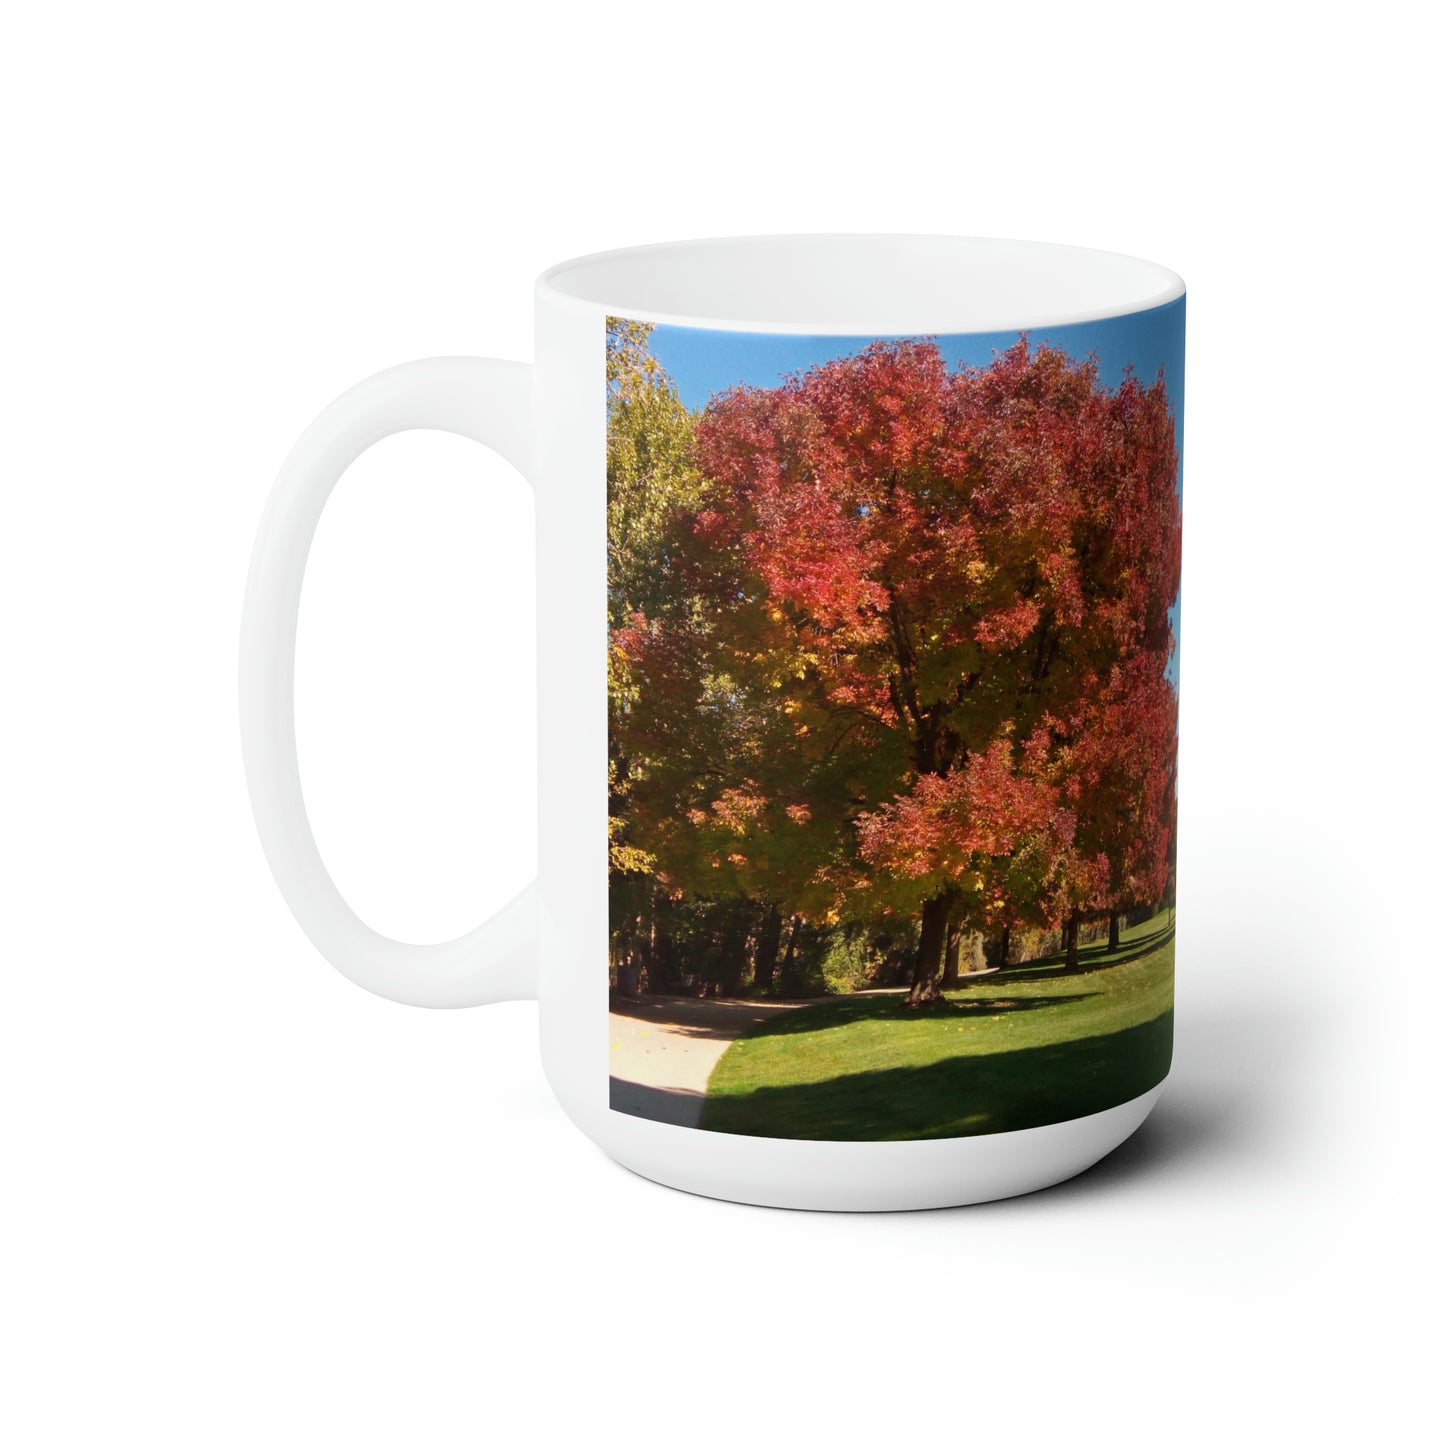 Autumn Tree Early Fall Ceramic Mug 15oz